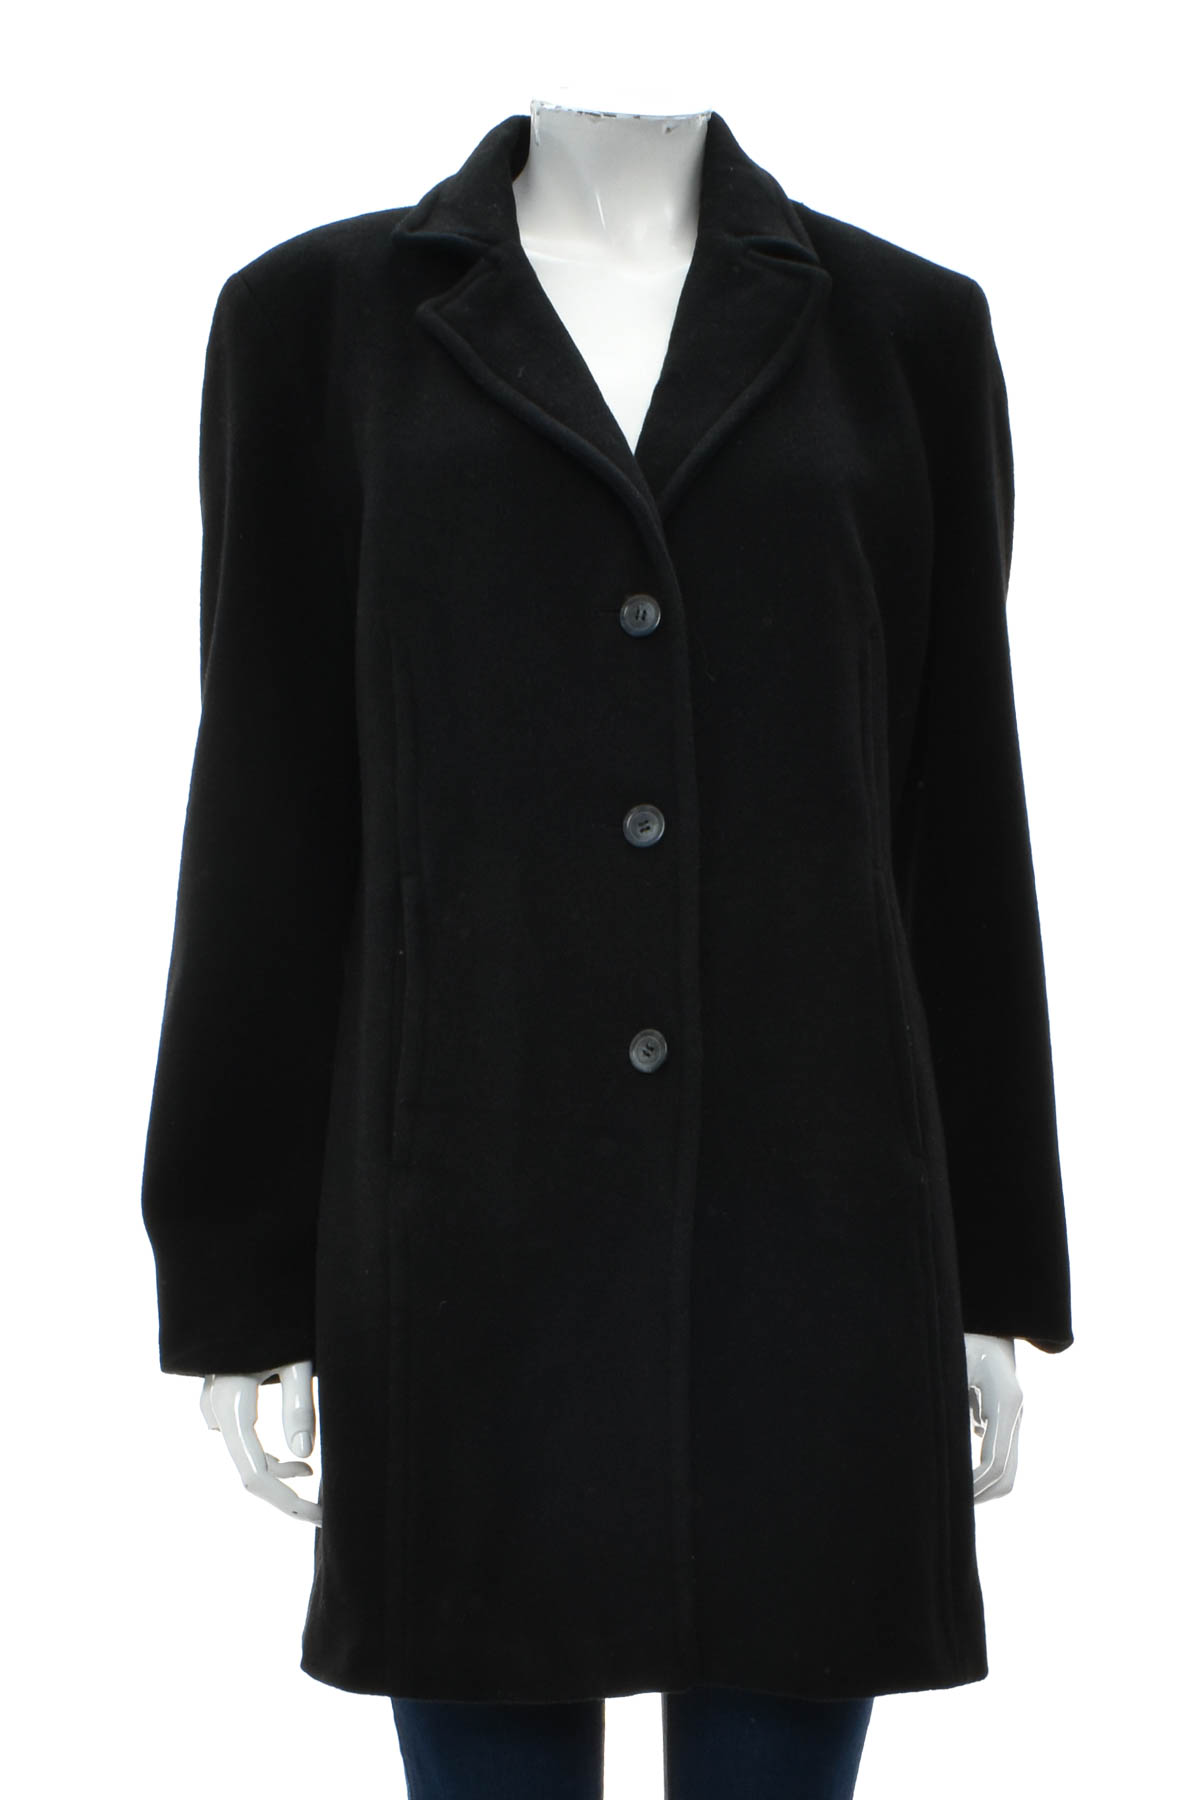 Γυναικείο παλτό - ElleNor - 0